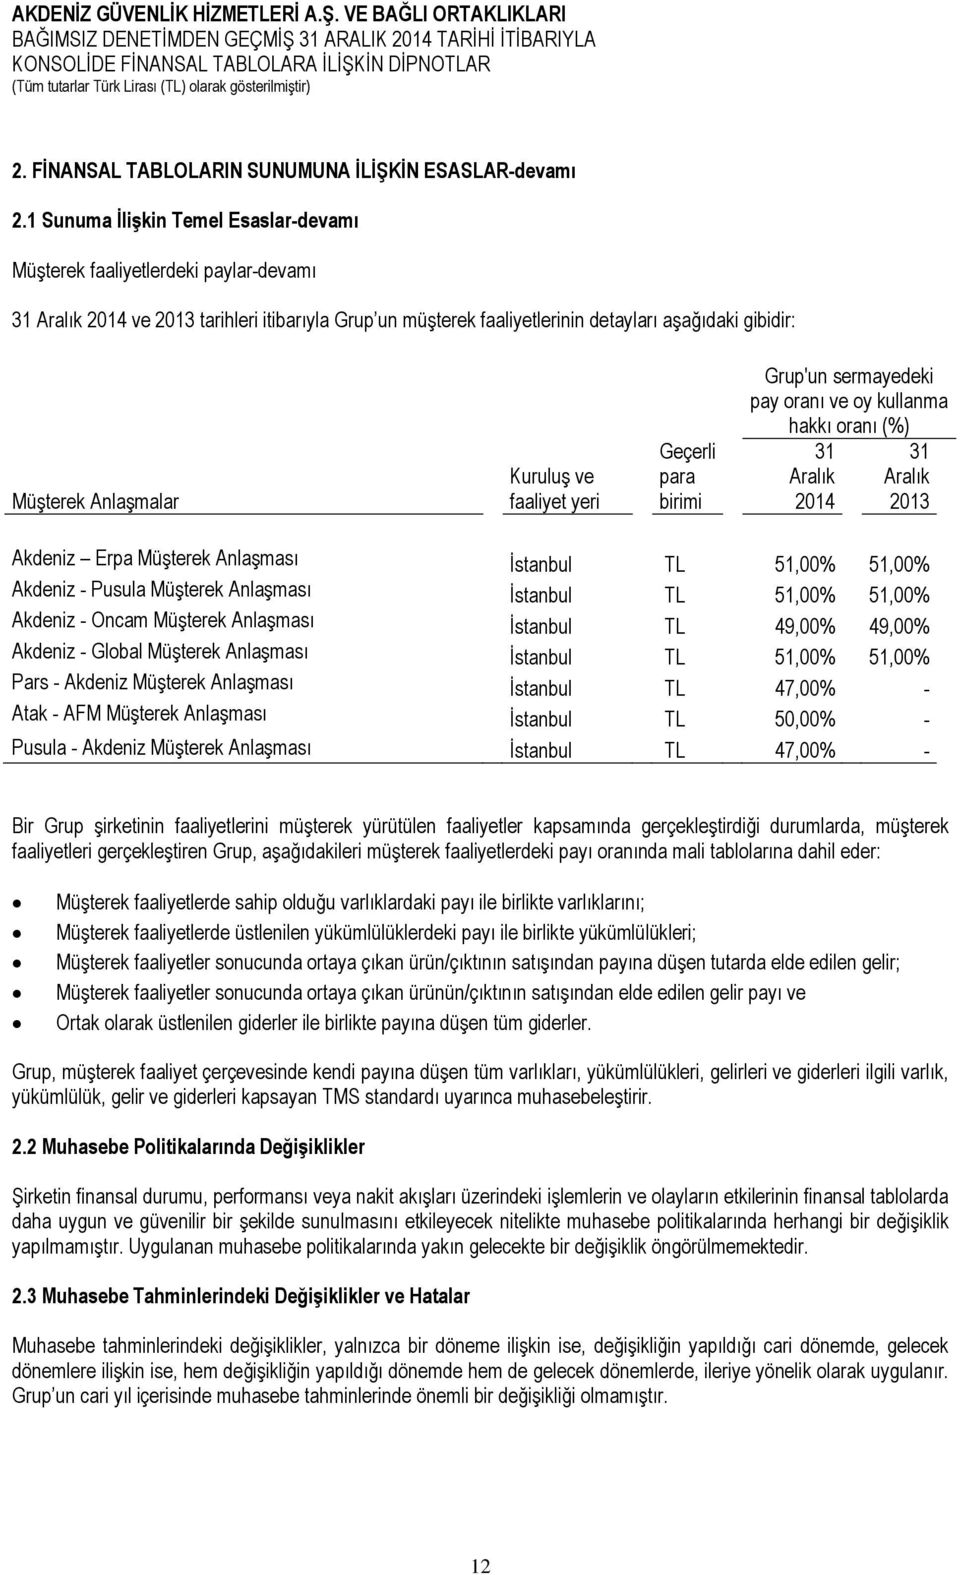 Anlaşmalar Kuruluş ve faaliyet yeri Geçerli para birimi Grup'un sermayedeki pay oranı ve oy kullanma hakkı oranı (%) 31 Aralık 2014 31 Aralık 2013 Akdeniz Erpa Müşterek Anlaşması İstanbul TL 51,00%